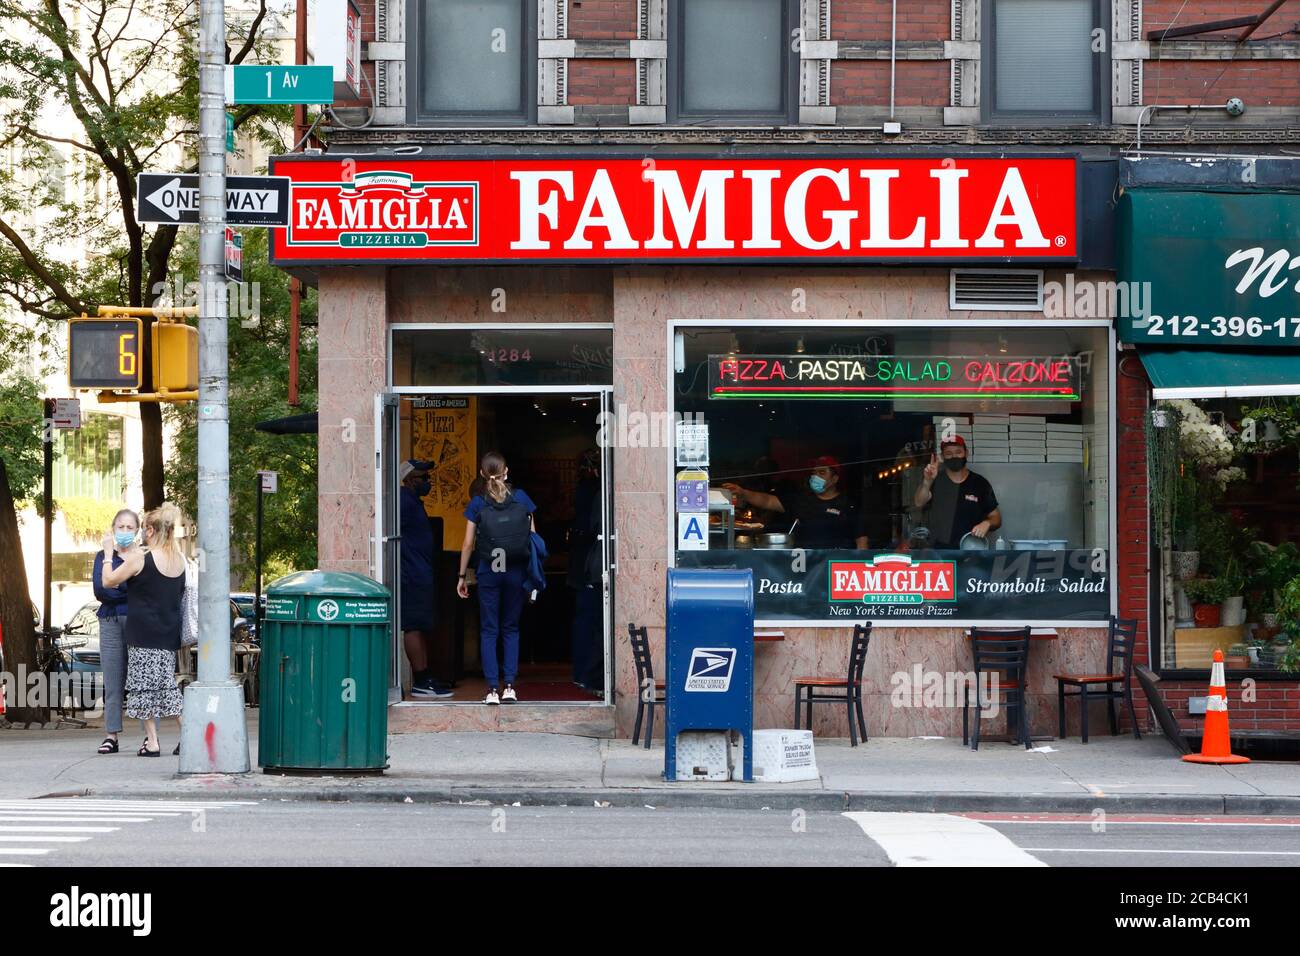 Famiglia Pizzeria famosa, 1284 First Ave, New York, foto di un negozio di una catena di pizzerie nel quartiere Upper East Side di Manhattan. Foto Stock